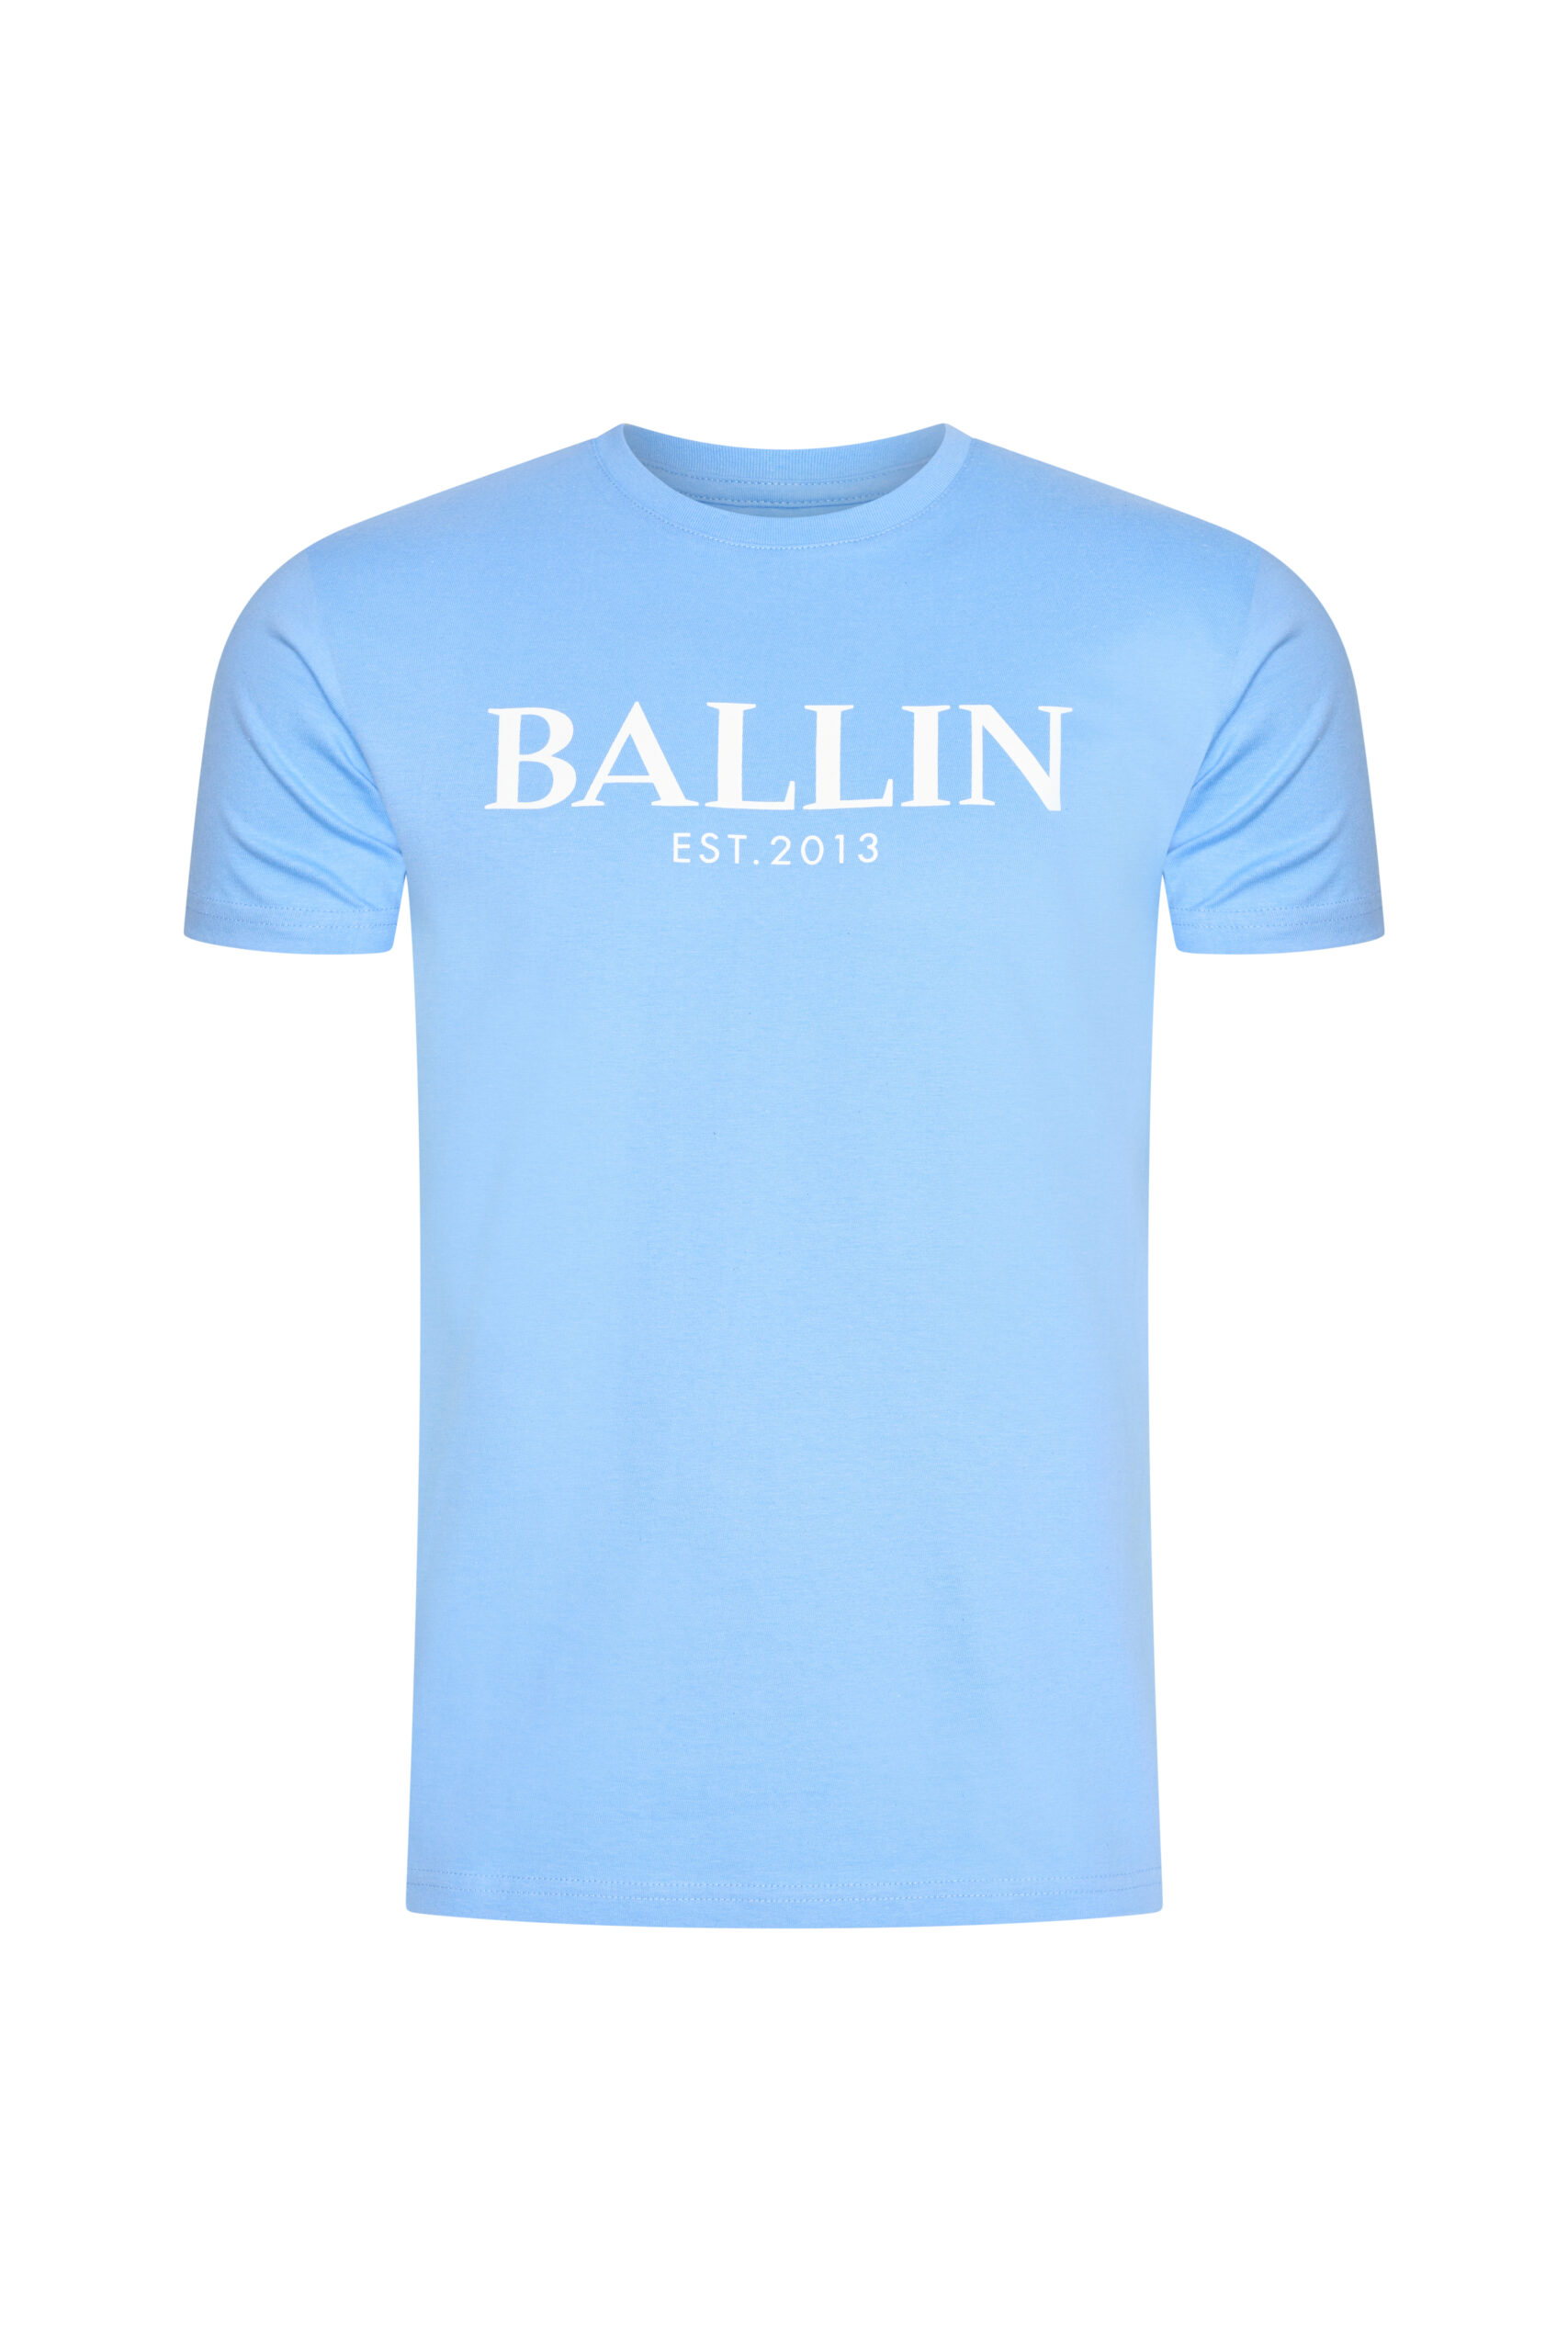 Afbeelding van Ballin Est. 2013 Heren t-shirt sky blue est 2013